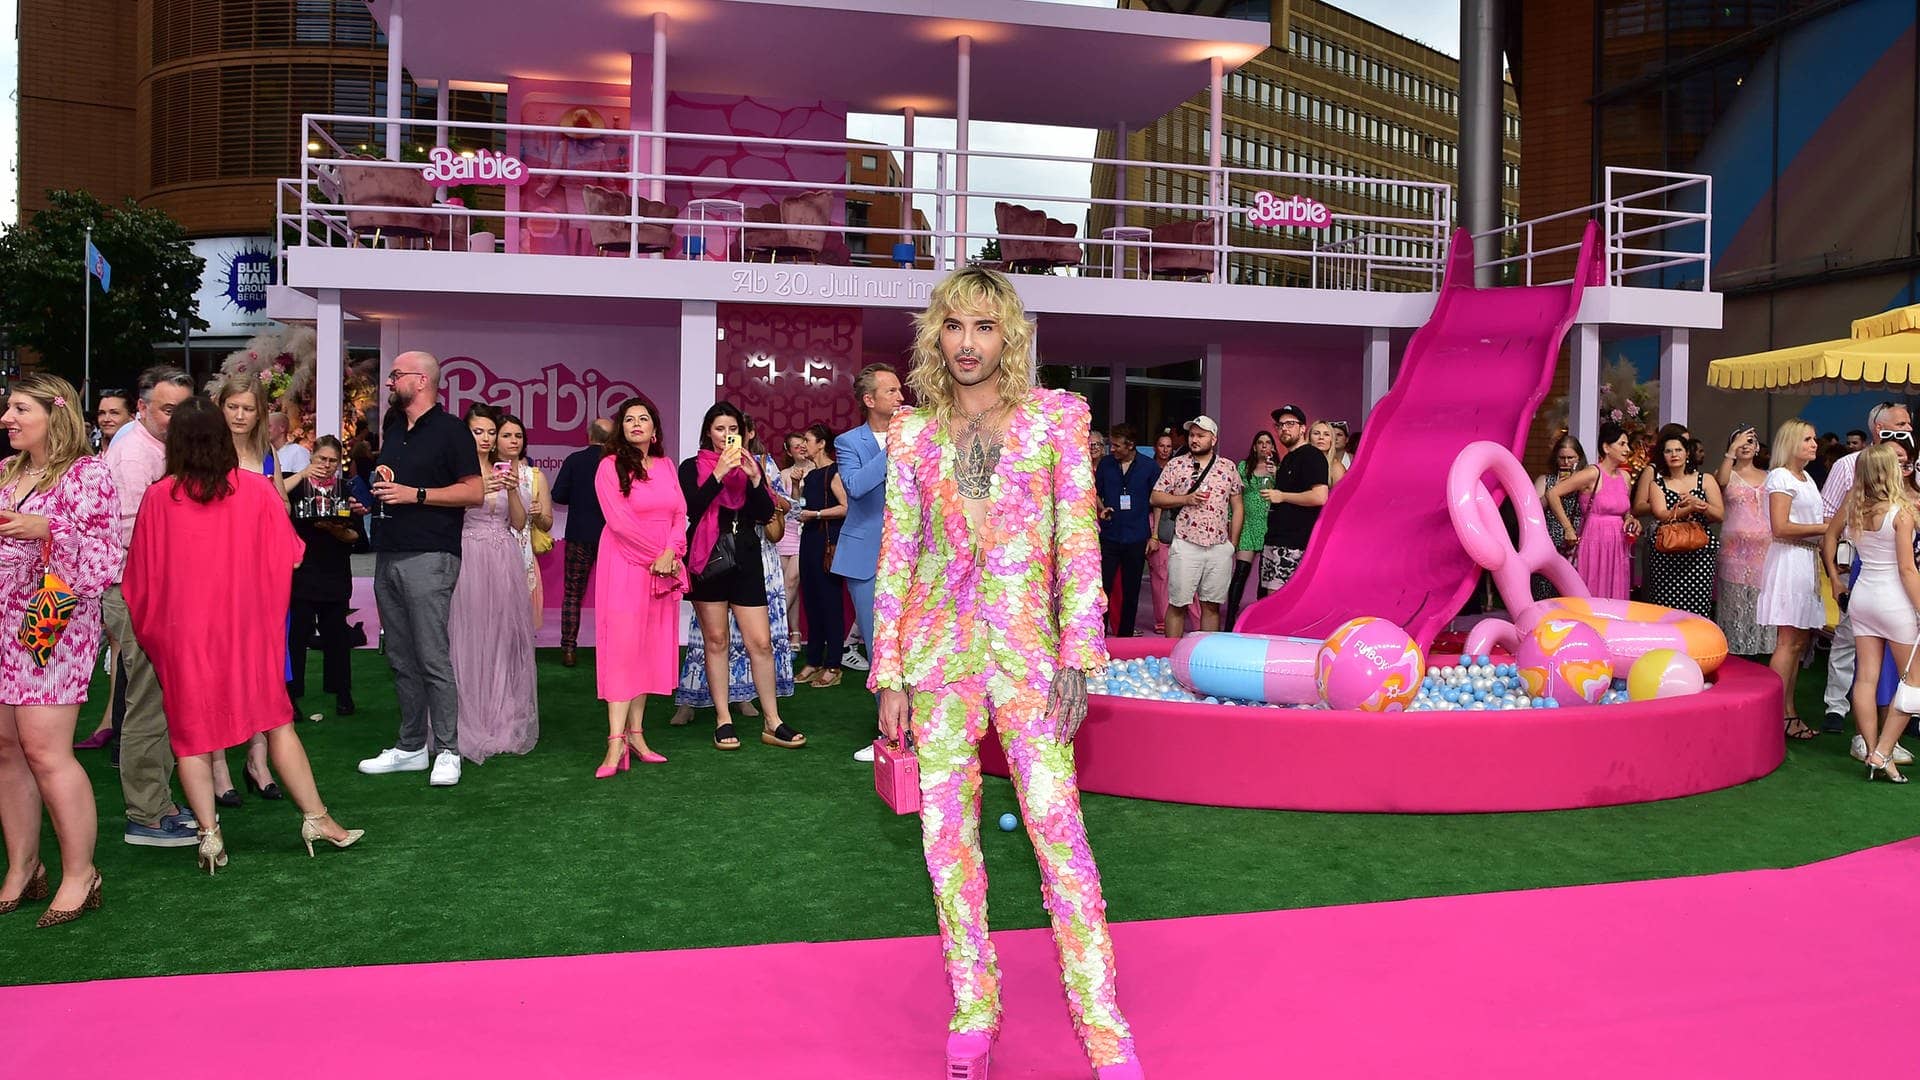 Sänger Bill Kaulitz setzt bei der Premiere vom neuen Barbie-Film auf einen farbenfrohen Anzug und pinke Plateauschuhen. Hier gibts die Kritik zum Kinofilm.